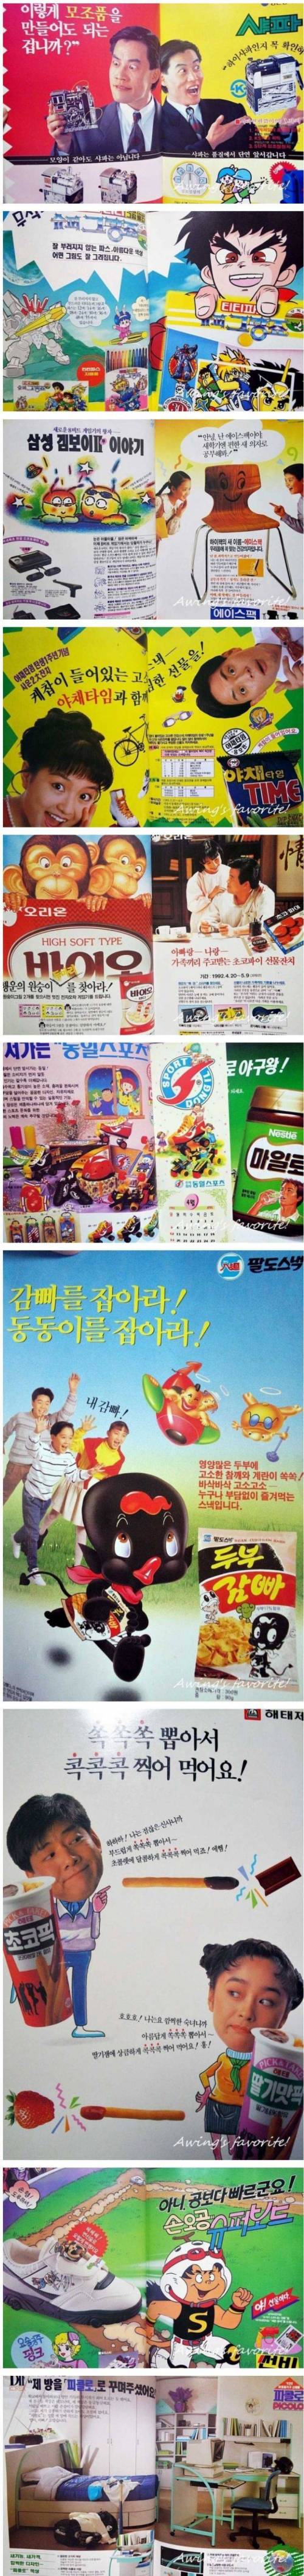 14 옛날 추억의 아동잡지 광고.jpg